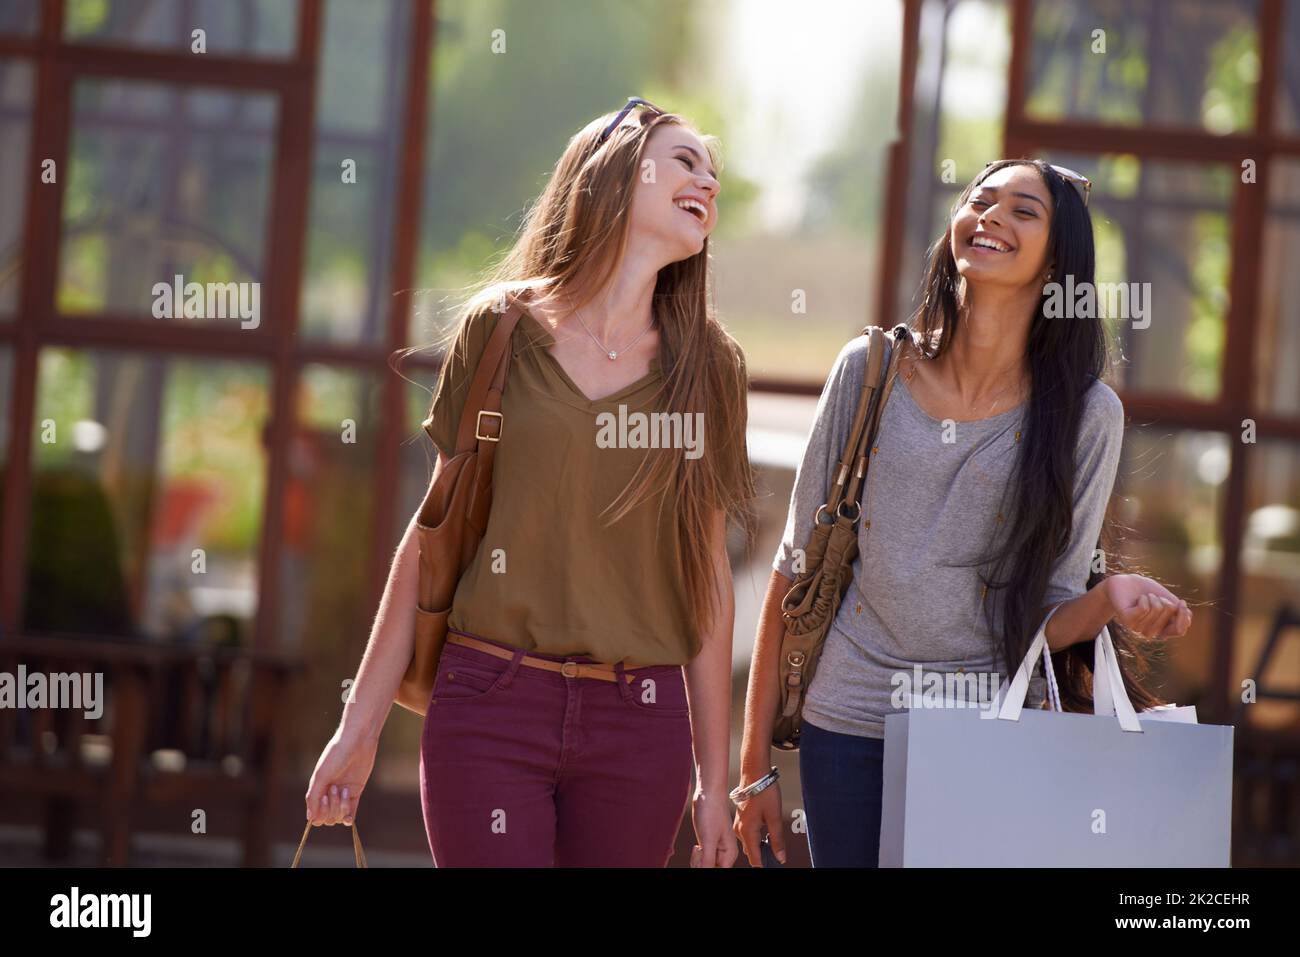 Es ist ein toller Tag zum Shoppen. Zwei attraktive junge Frau mit ihren Einkaufstaschen nach einem Tag der Verkaufstherapie. Stockfoto